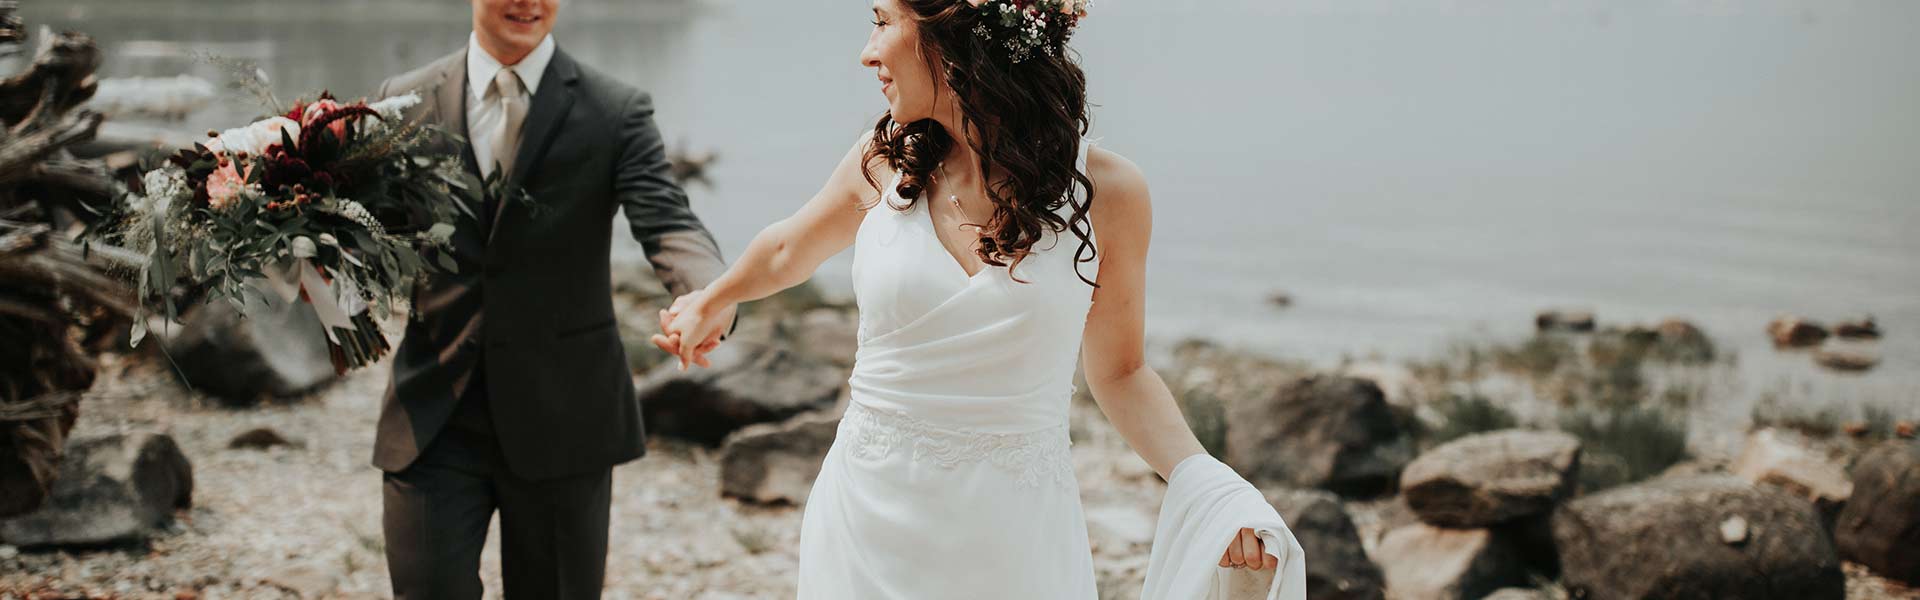 Hochzeitspaar entlang des Strandes laufend. Braut zieht Bräutigam hinter sich her